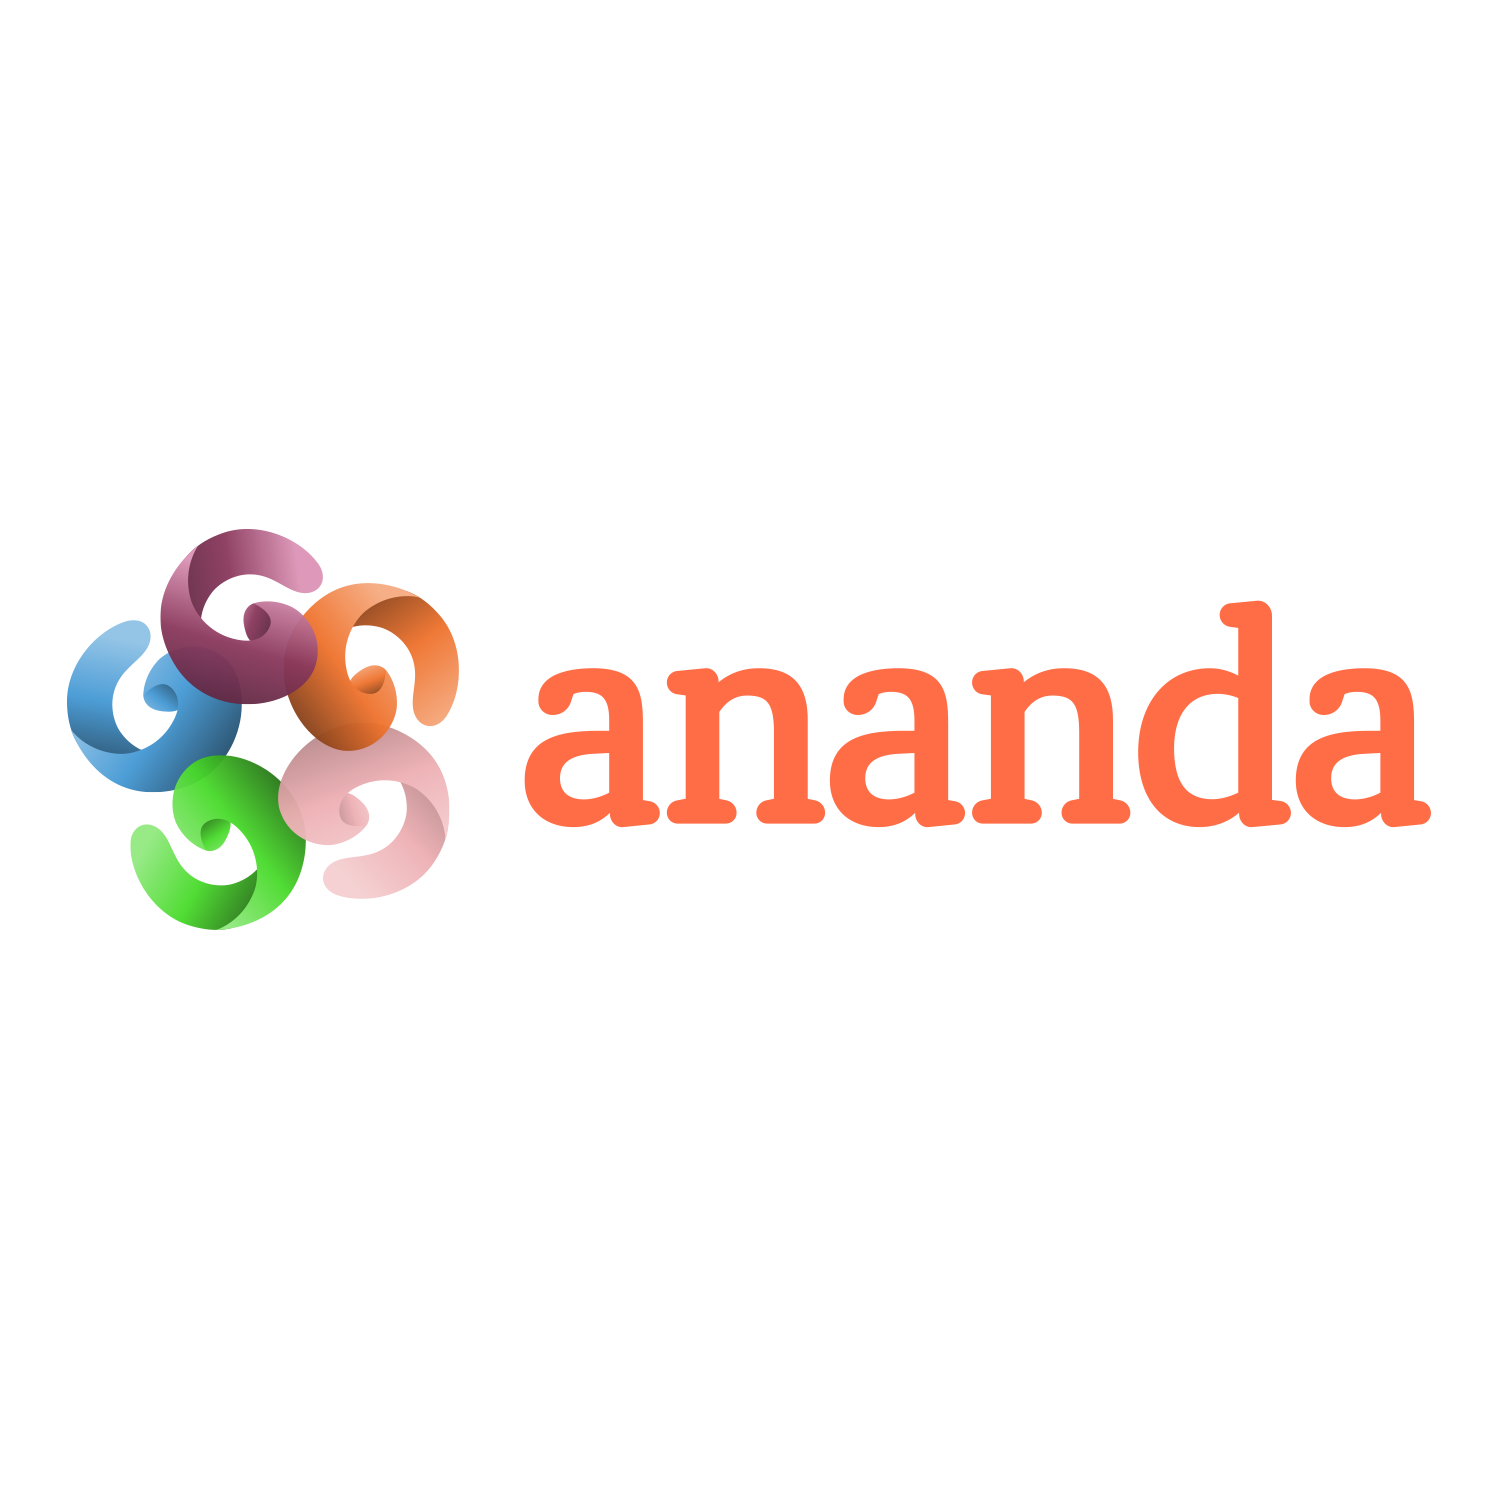 Ananda Identity